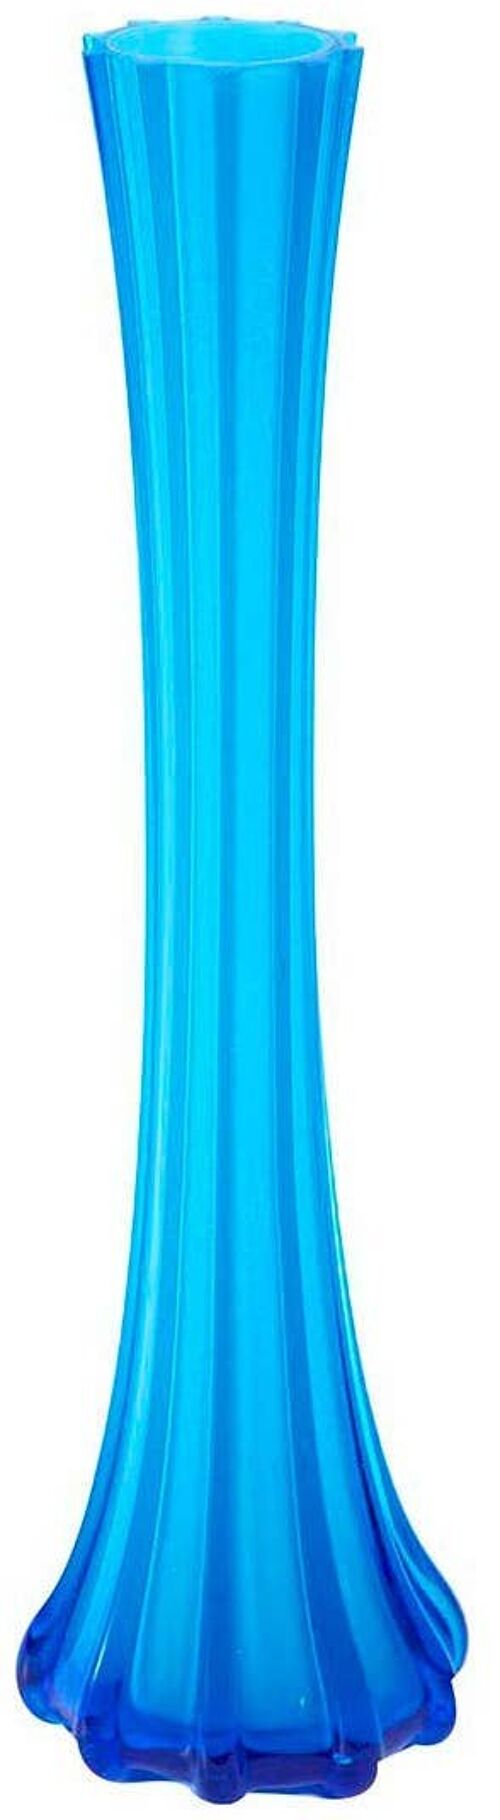 Vaso Vintage In Vetro Colorato Piccolo/azzurro